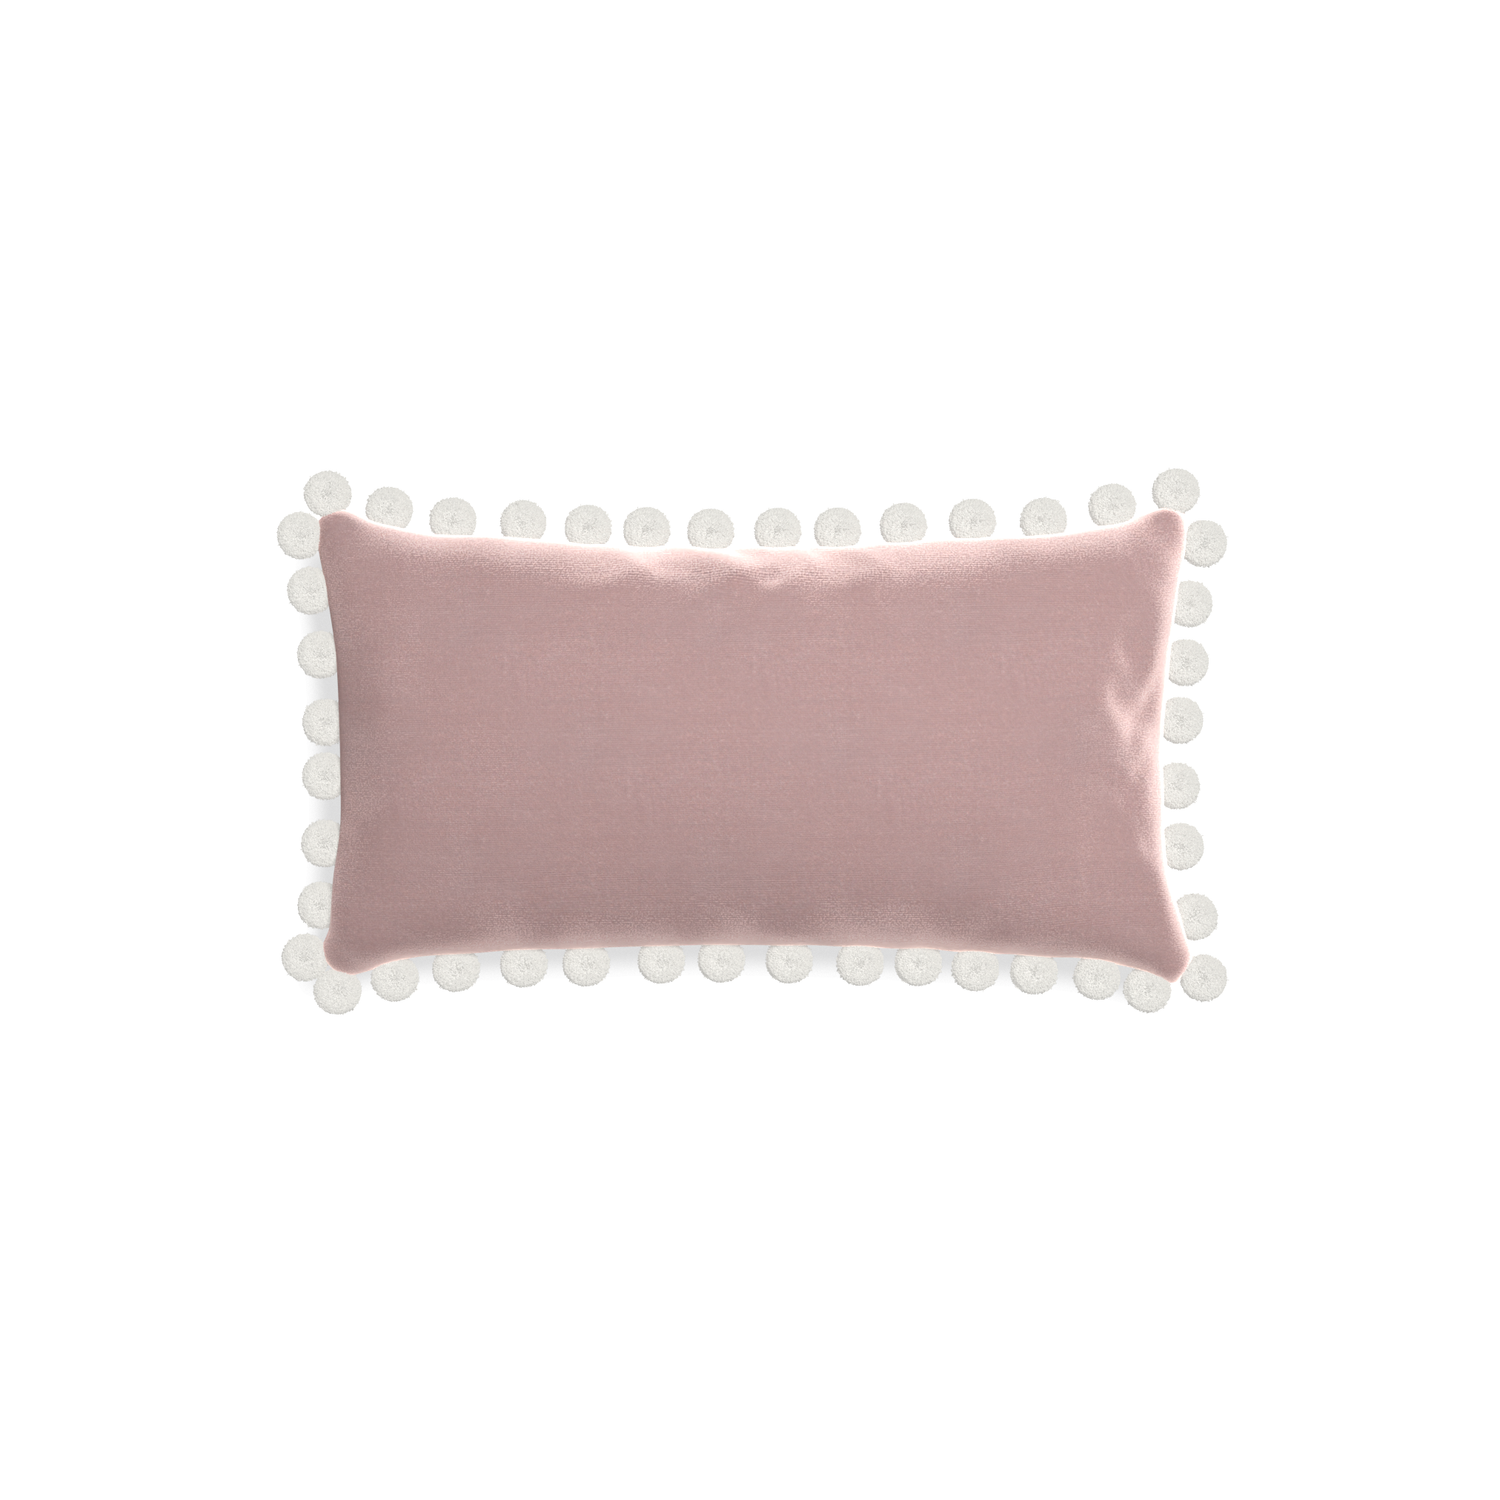 rectangle mauve velvet pillow with white pom poms